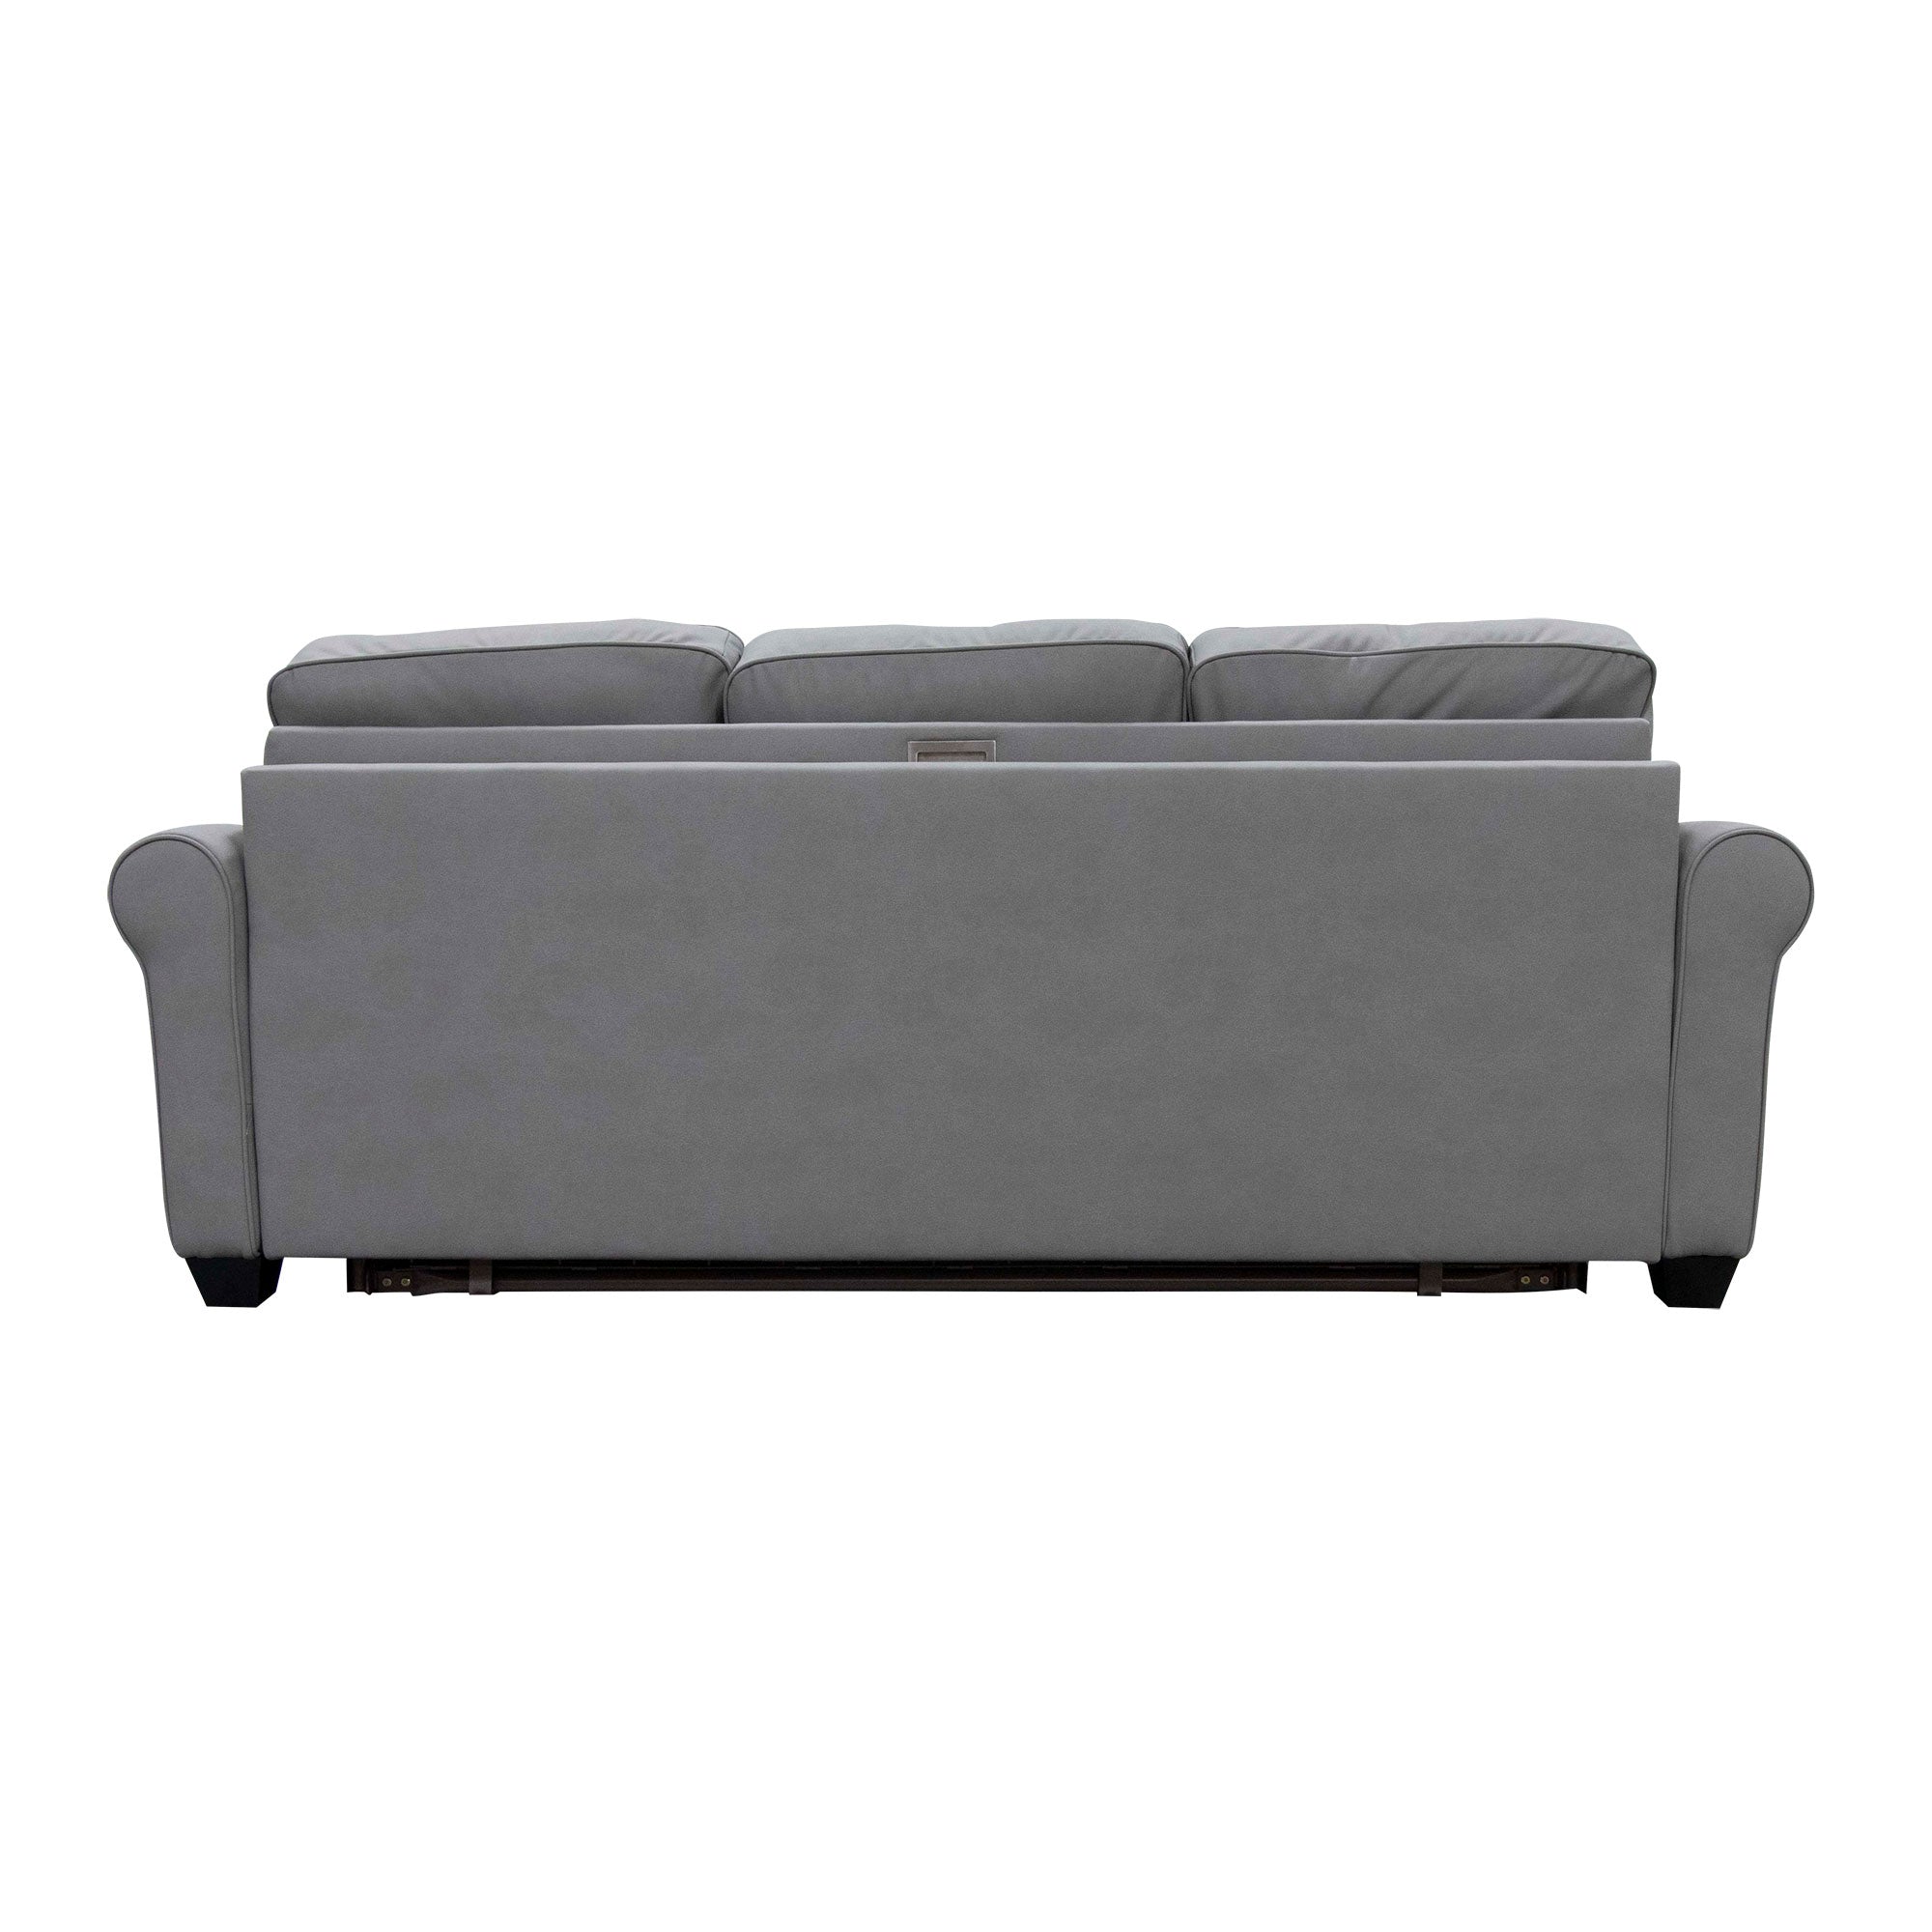 Plato Sofa Bed